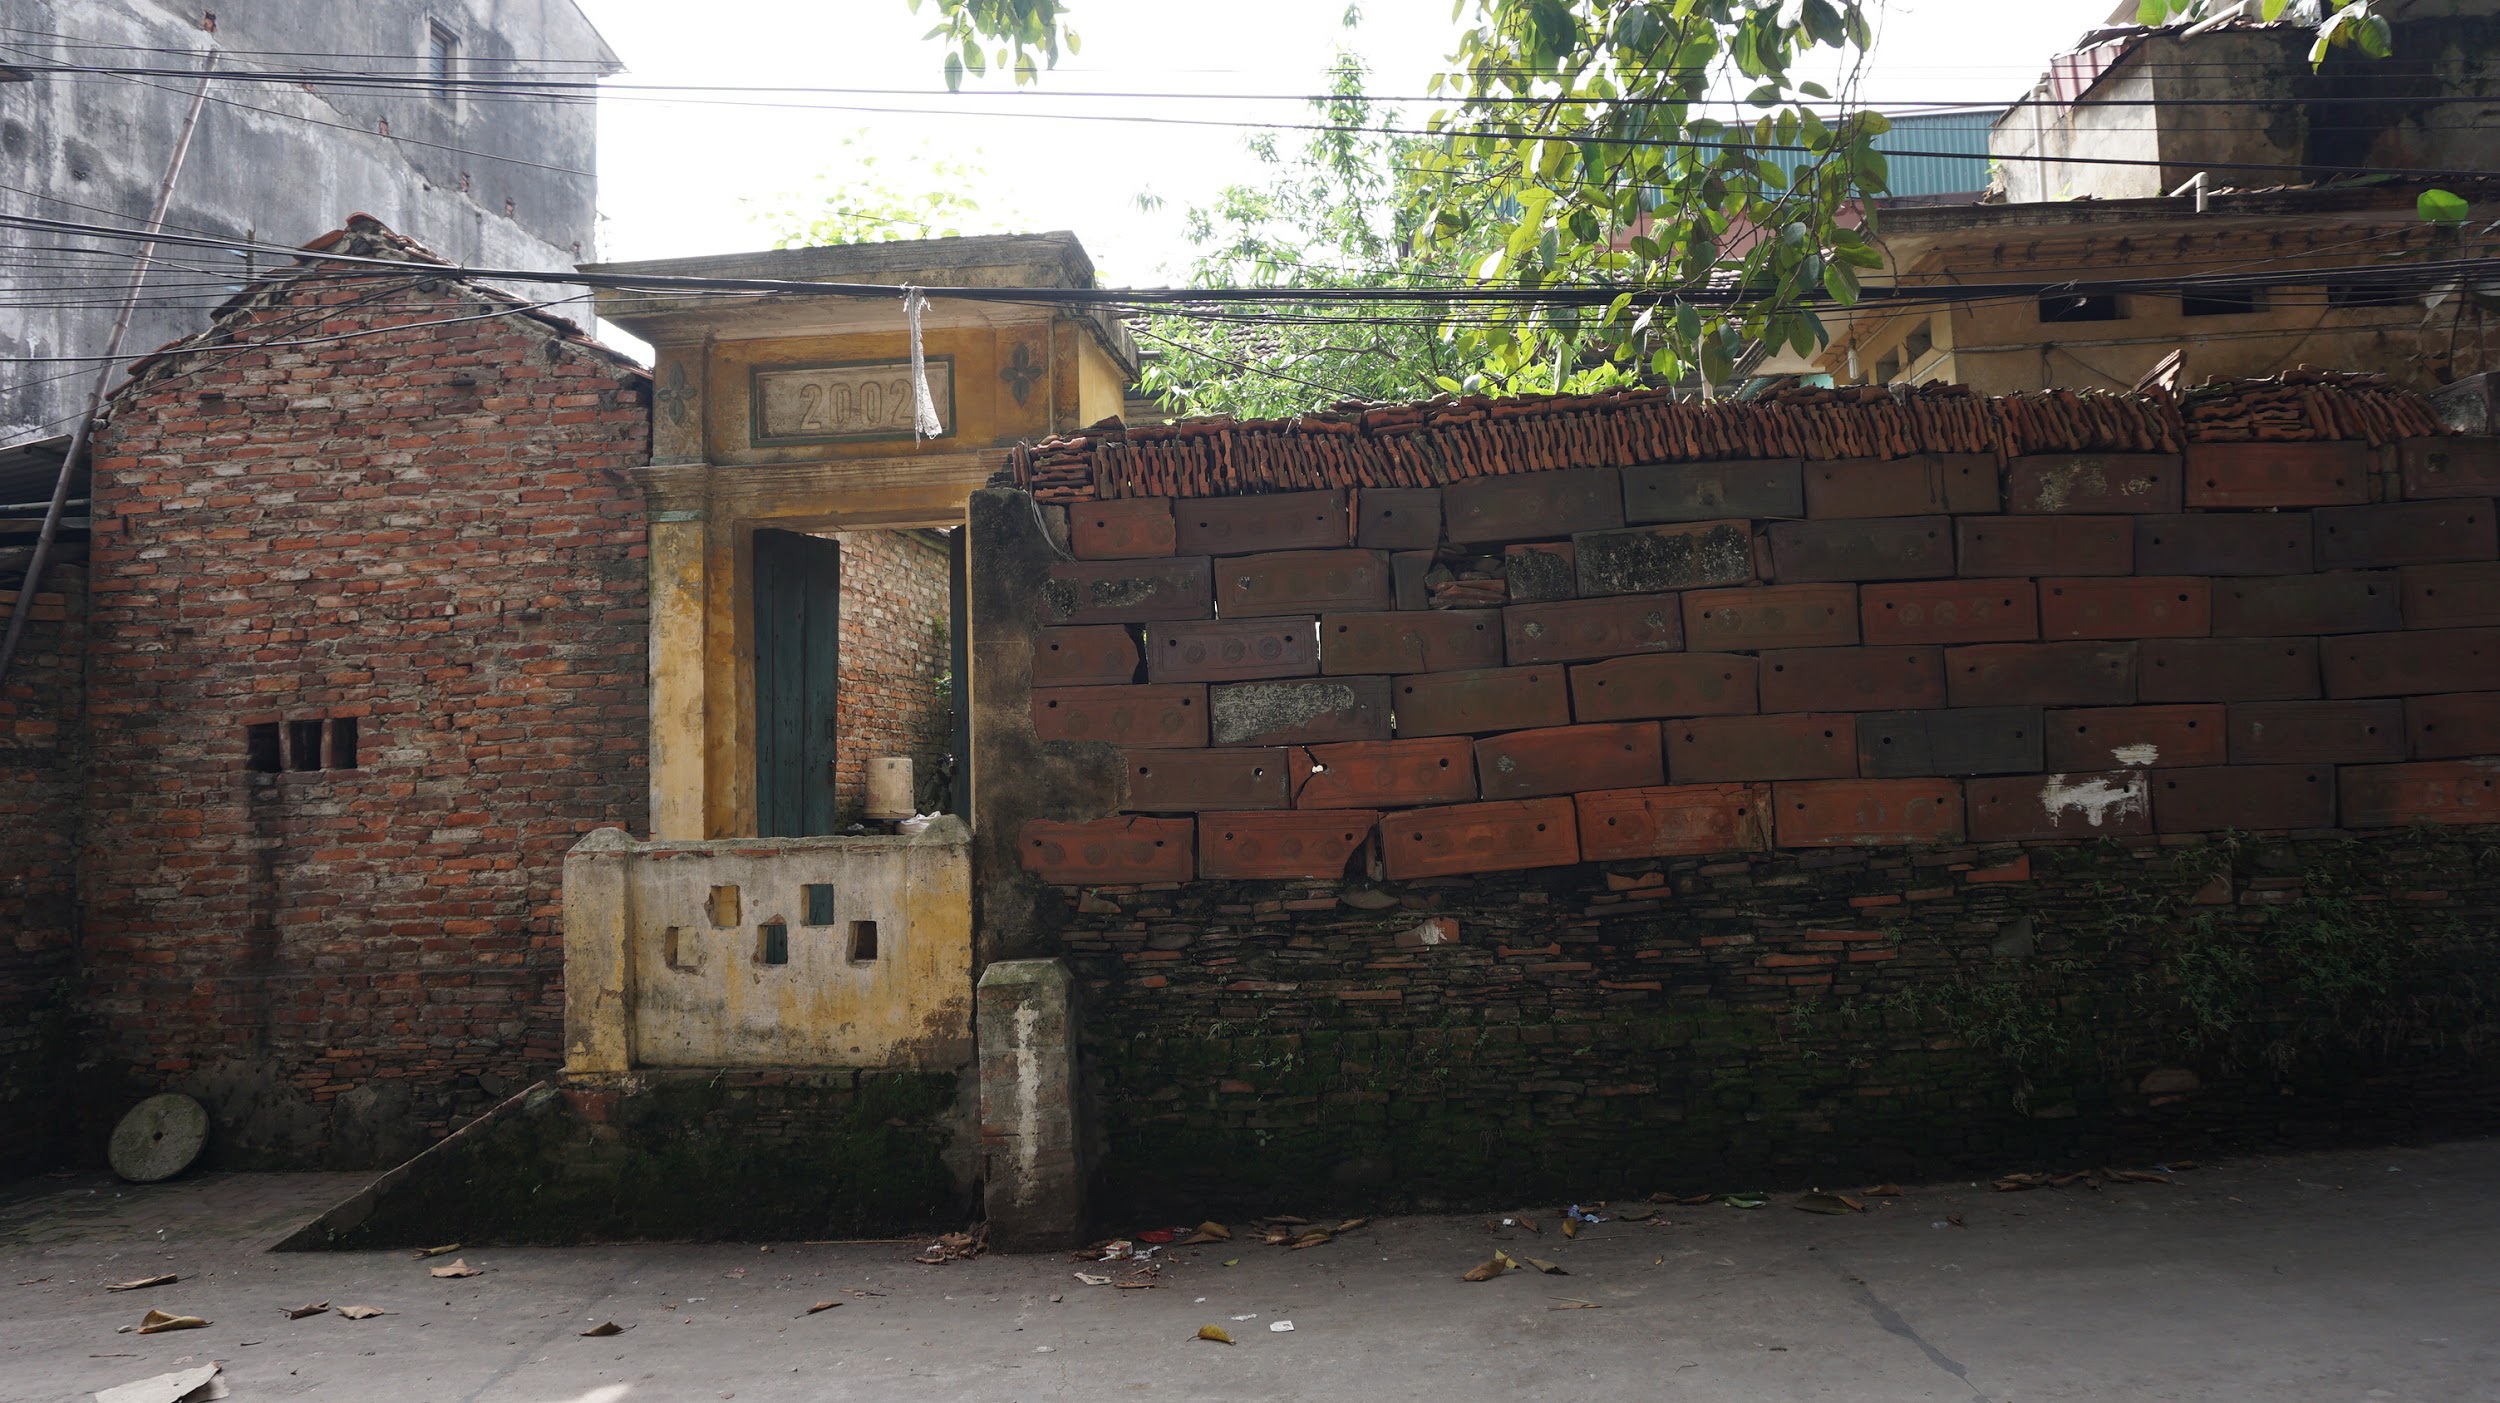 Kỳ lạ làng có những ngôi nhà xây bằng tiểu sành độc nhất ở Việt Nam - 5